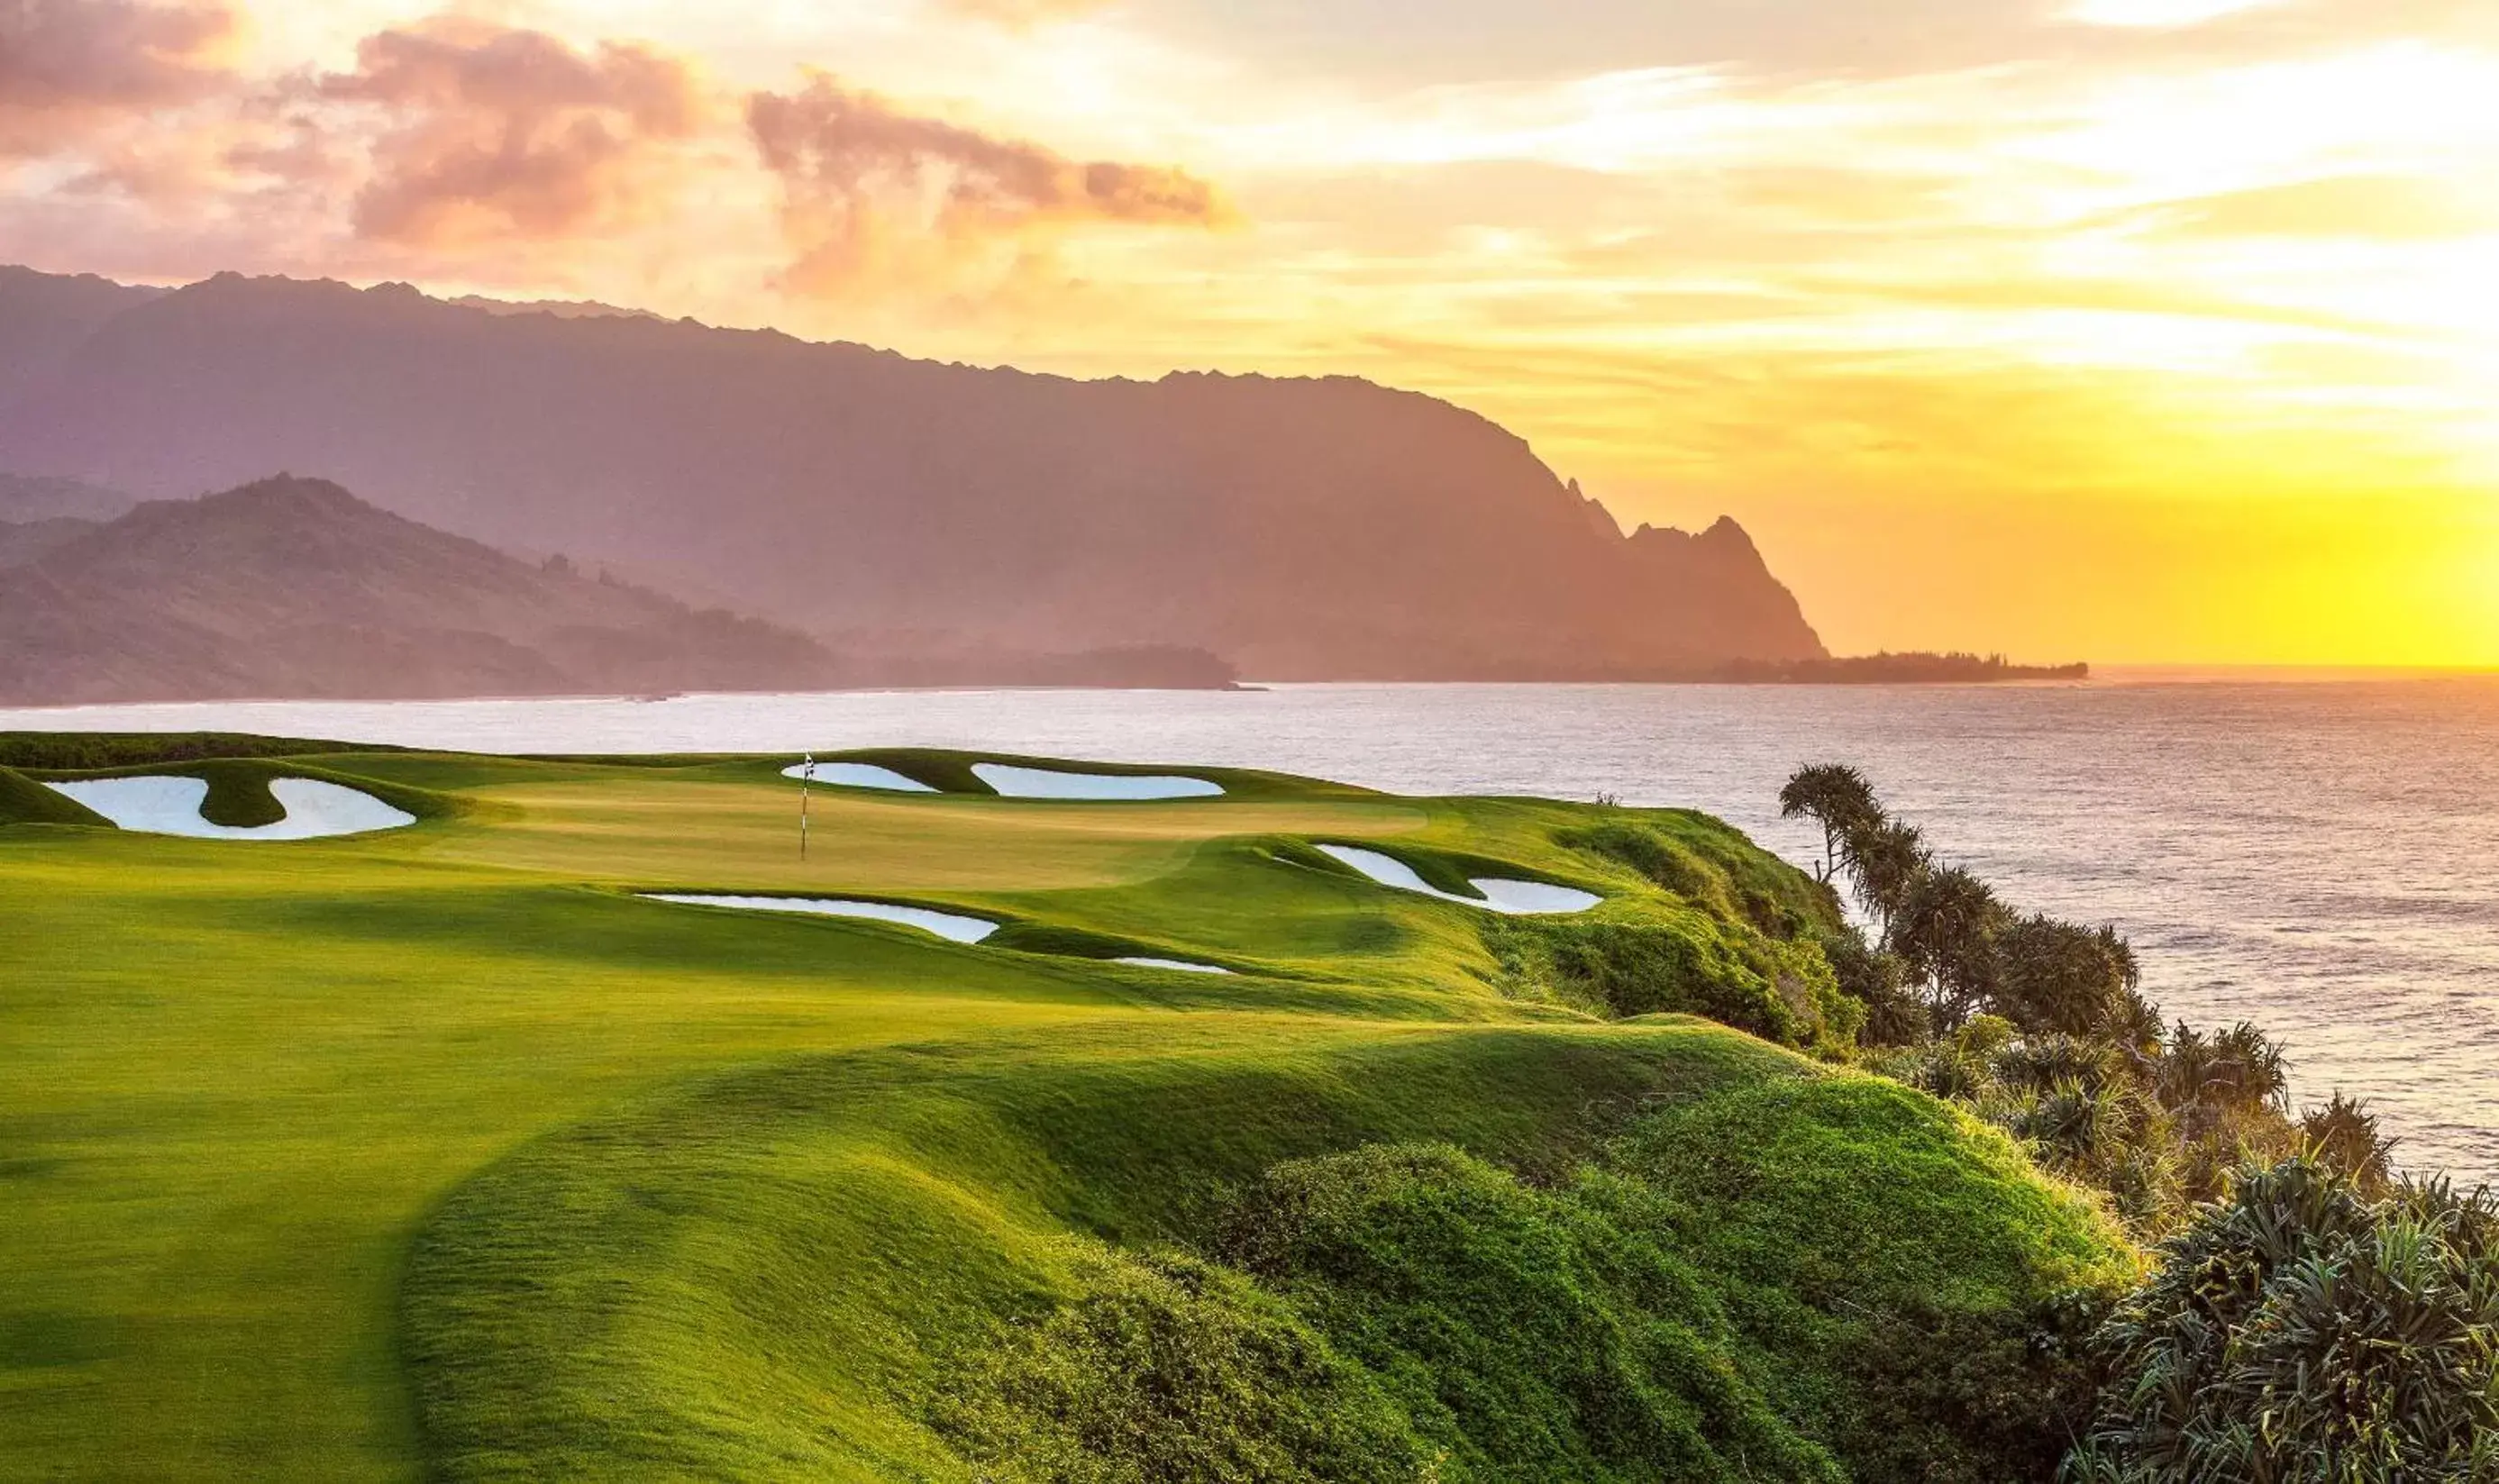 On site, Golf in 1 Hotel Hanalei Bay